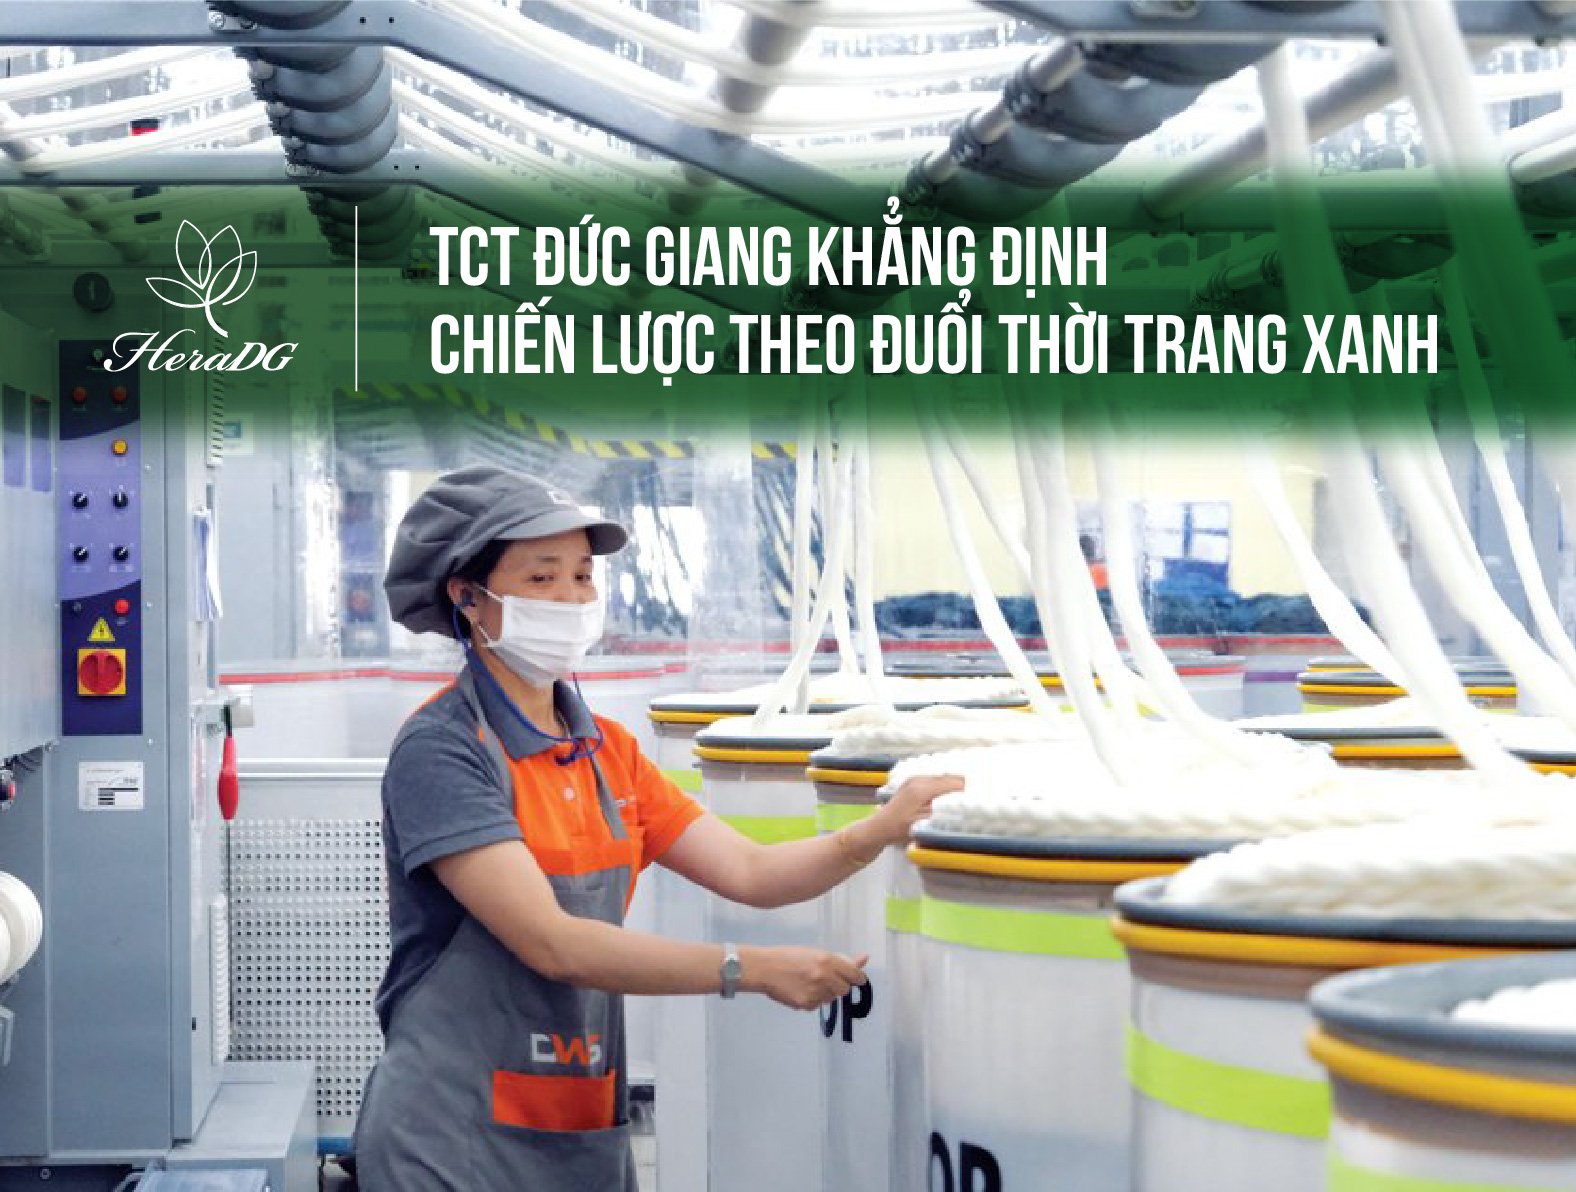 HeraDG - TCT Đức Giang khẳng định chiến lược theo đuổi thời trang xanh